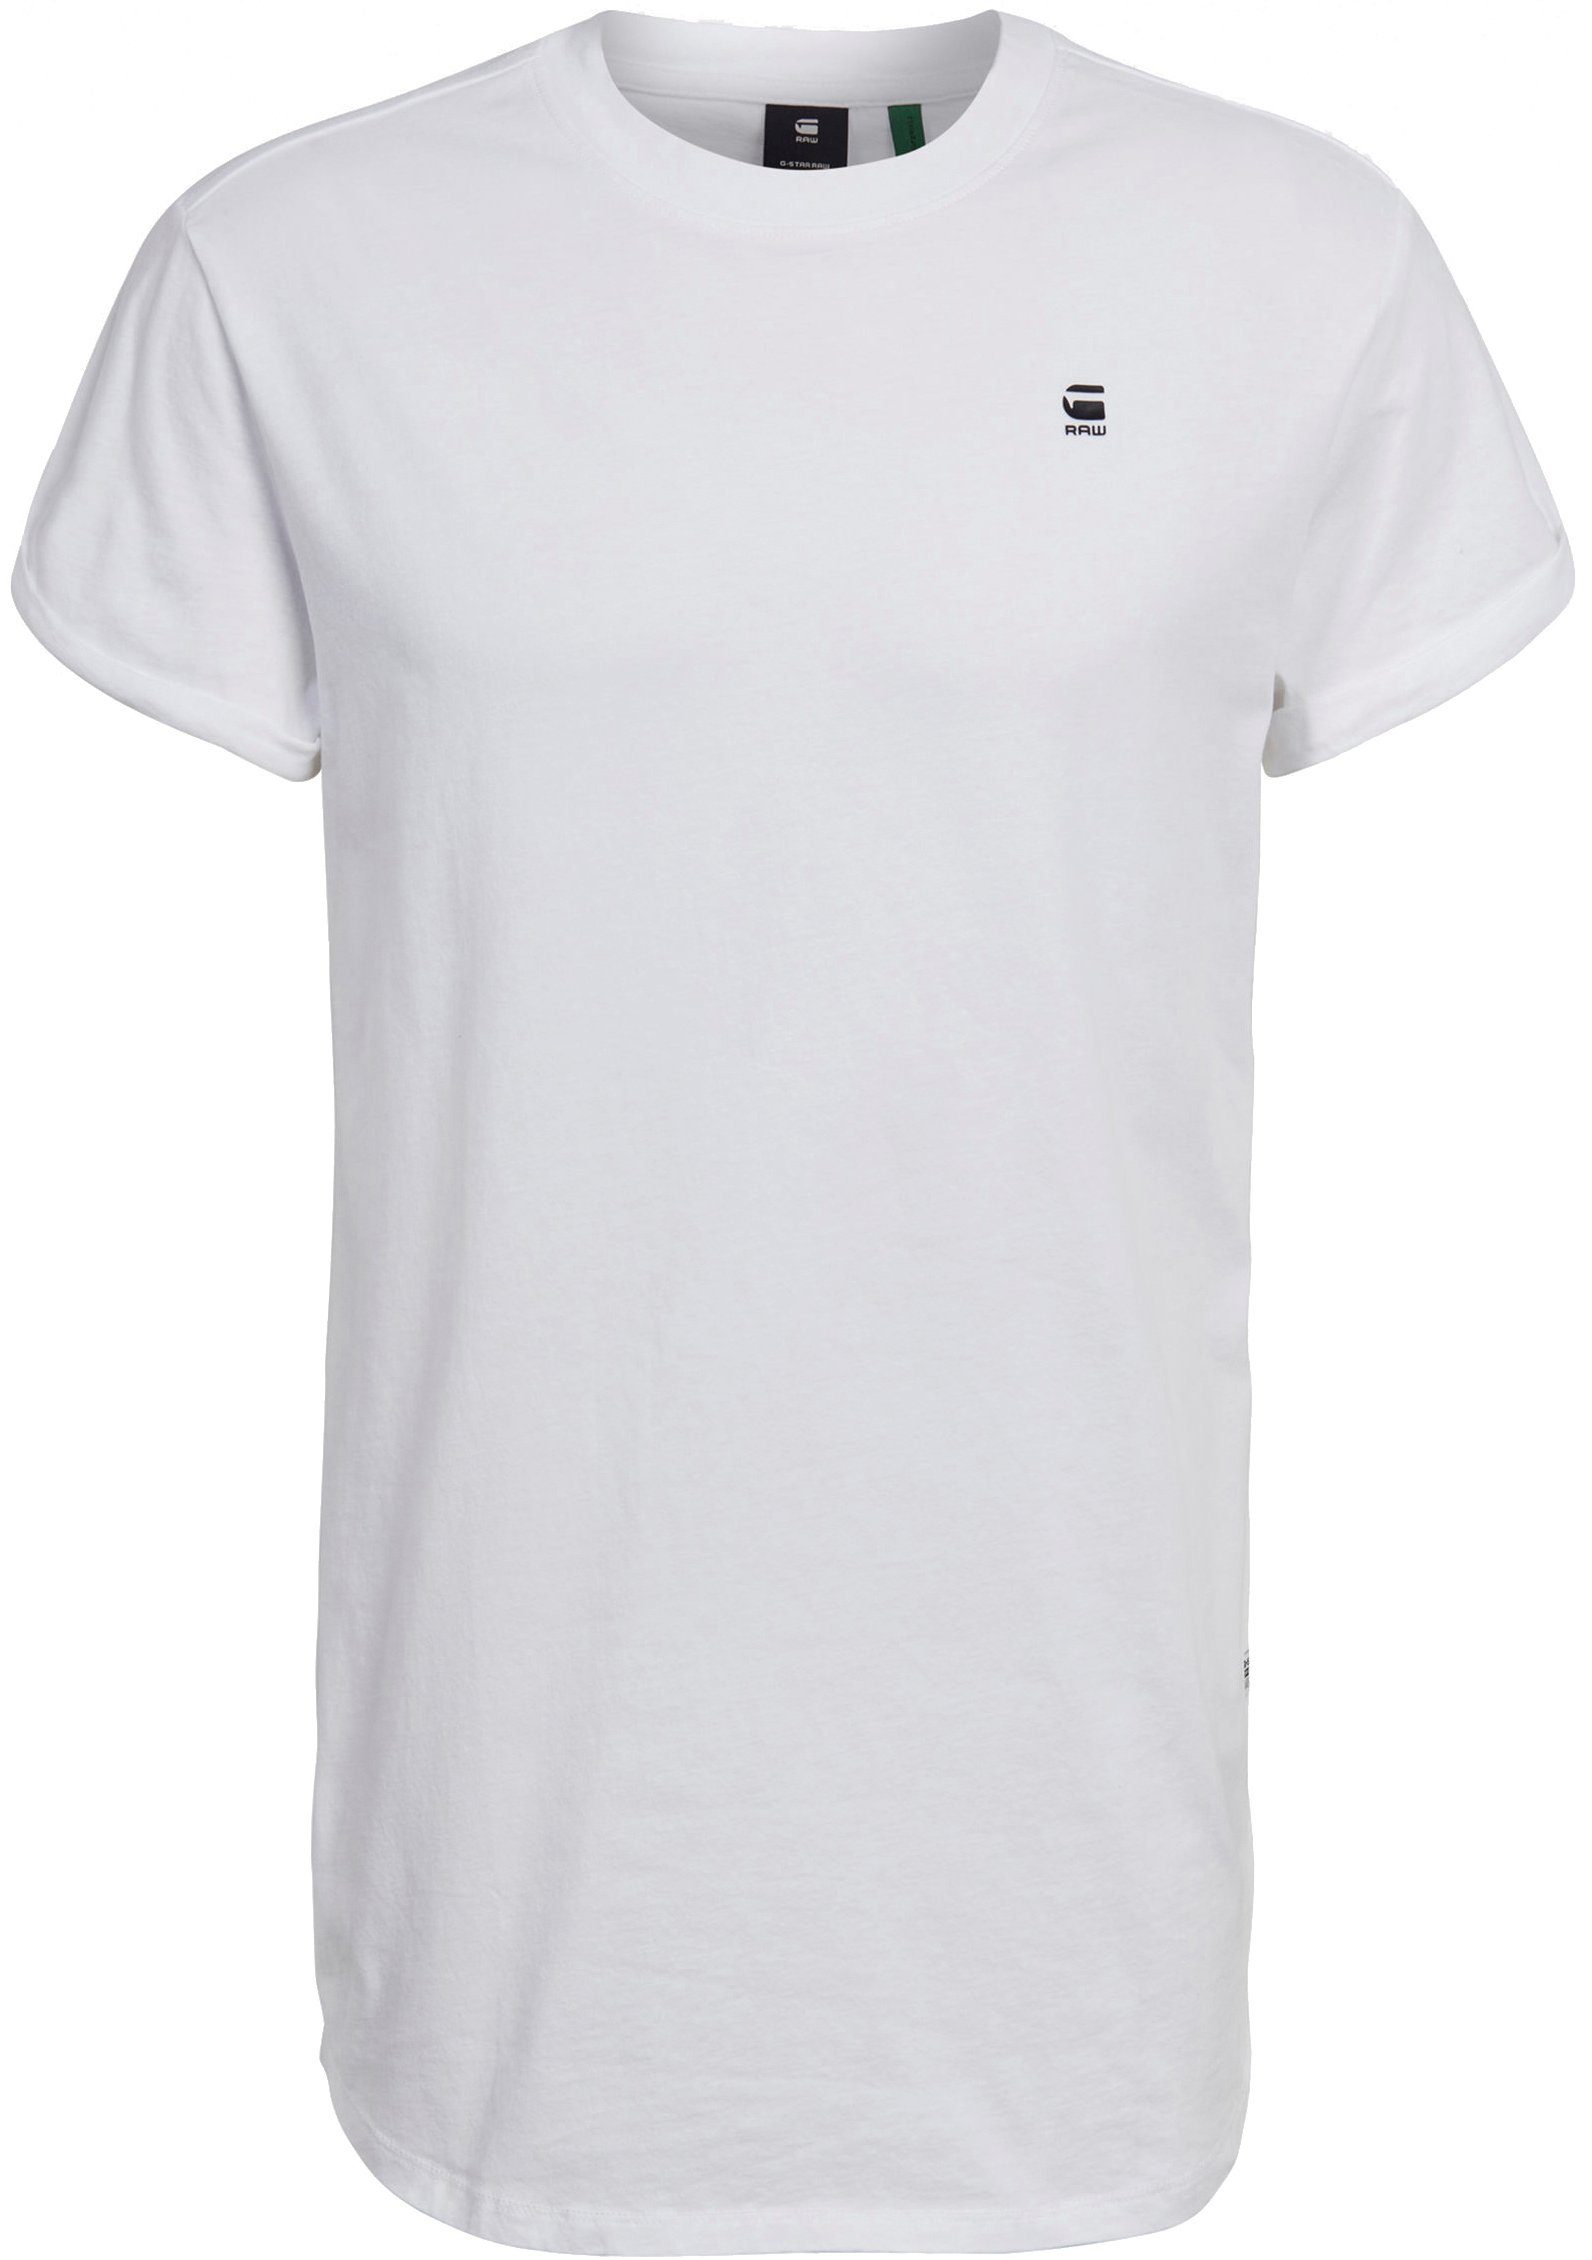 RAW Logo white T-Shirt Stitching kleinem G-Star mit Lash